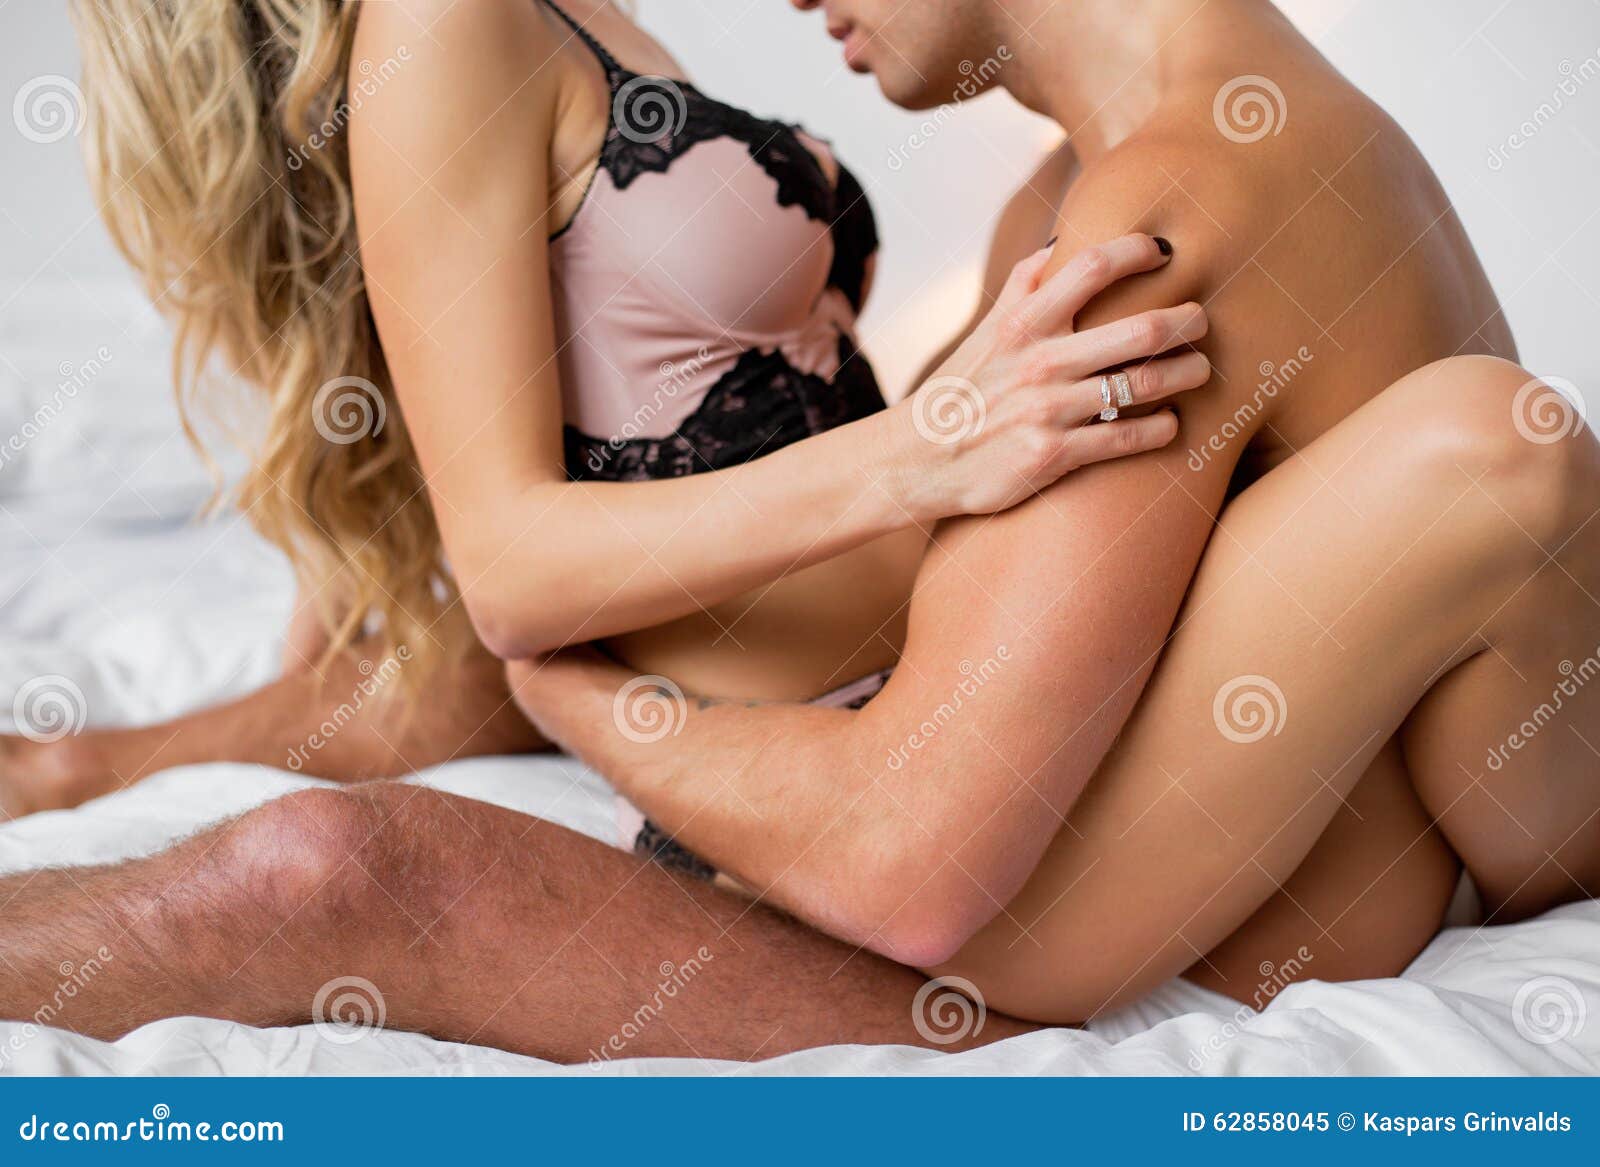 Men kissing women breast